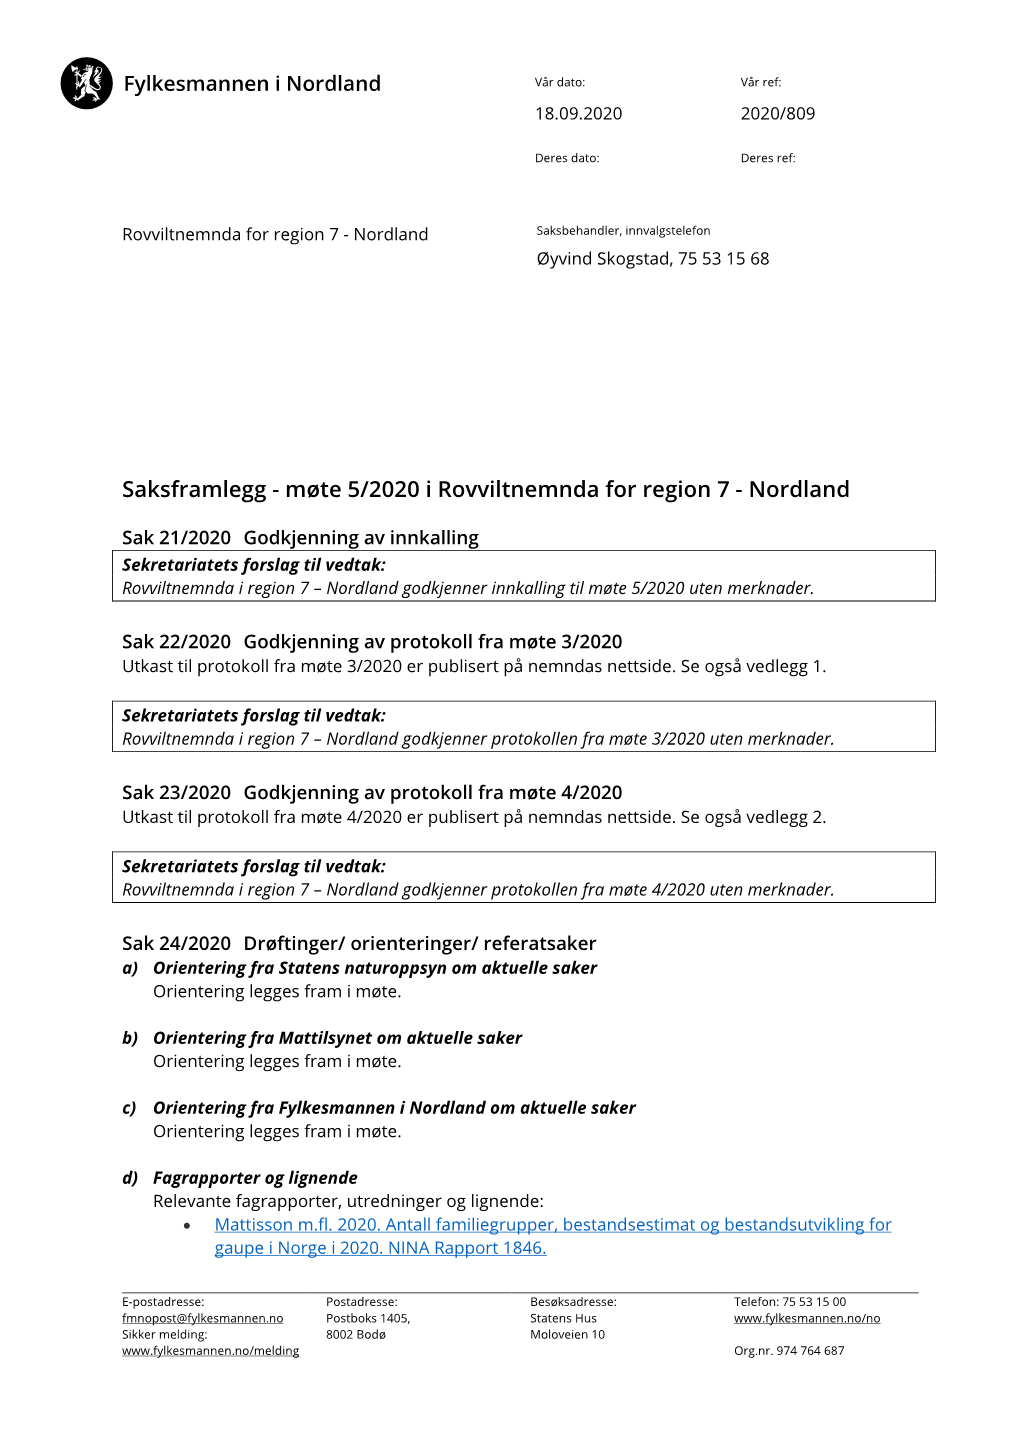 Saksframlegg - Møte 5/2020 I Rovviltnemnda for Region 7 - Nordland